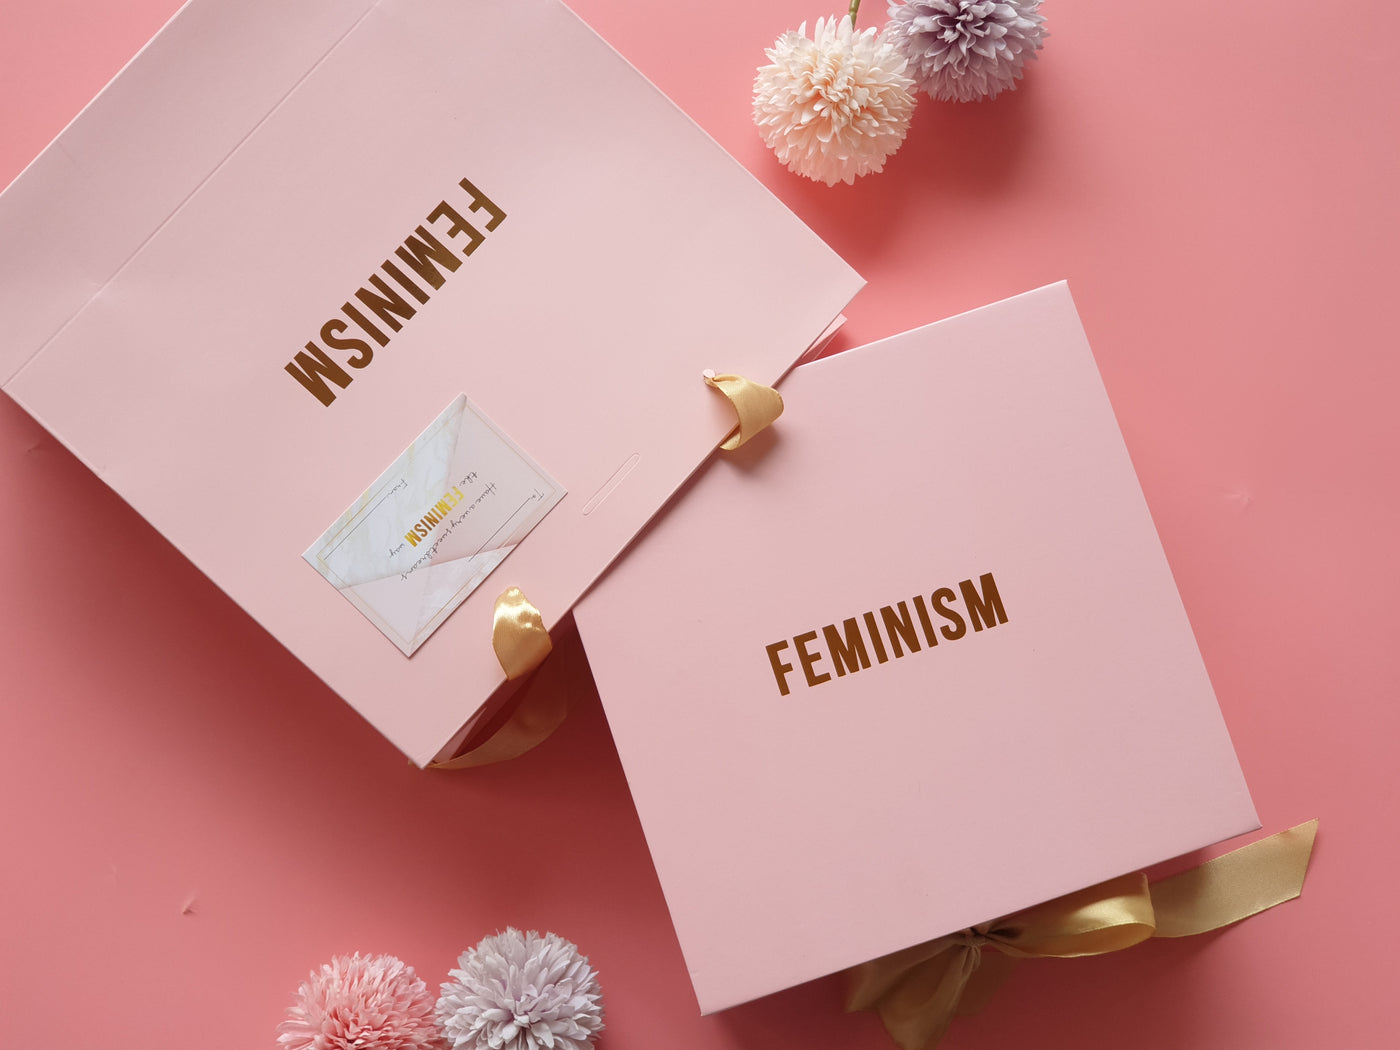 Feminism gift box